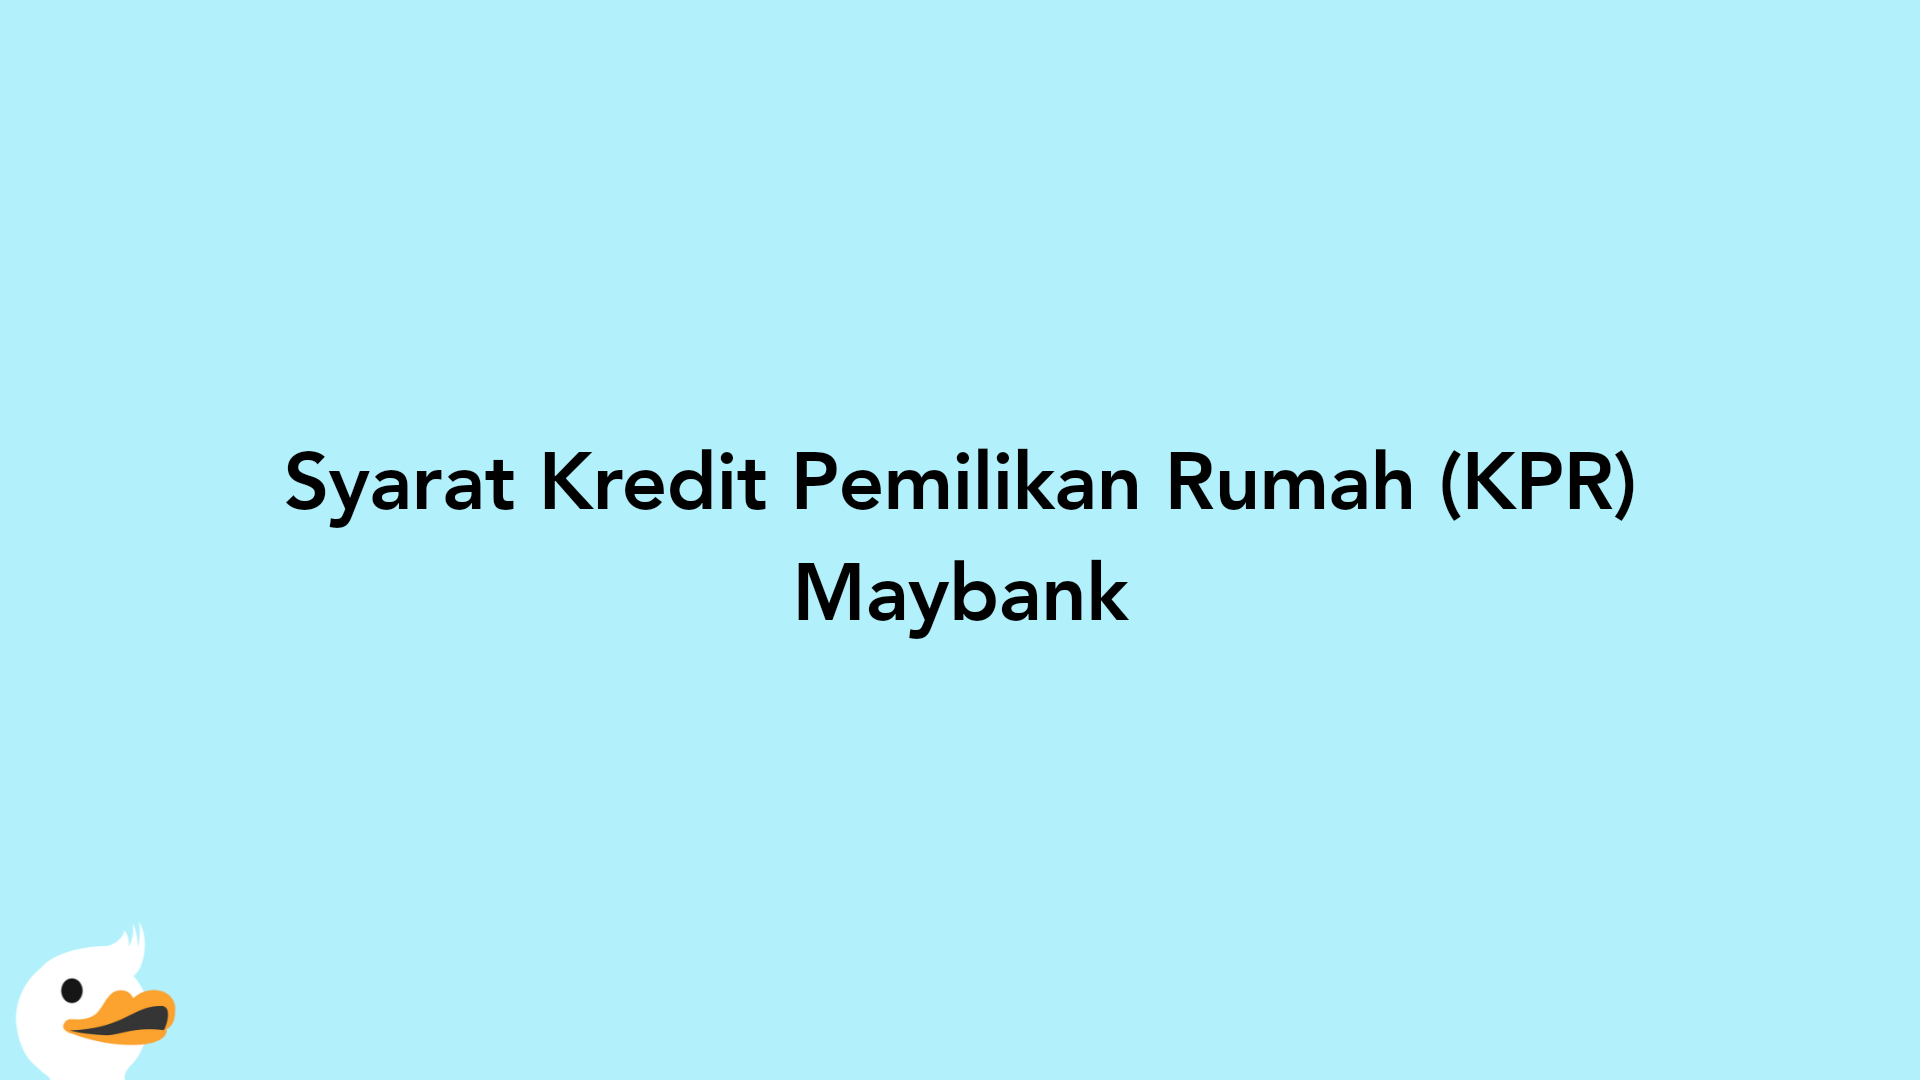 Syarat Kredit Pemilikan Rumah (KPR) Maybank